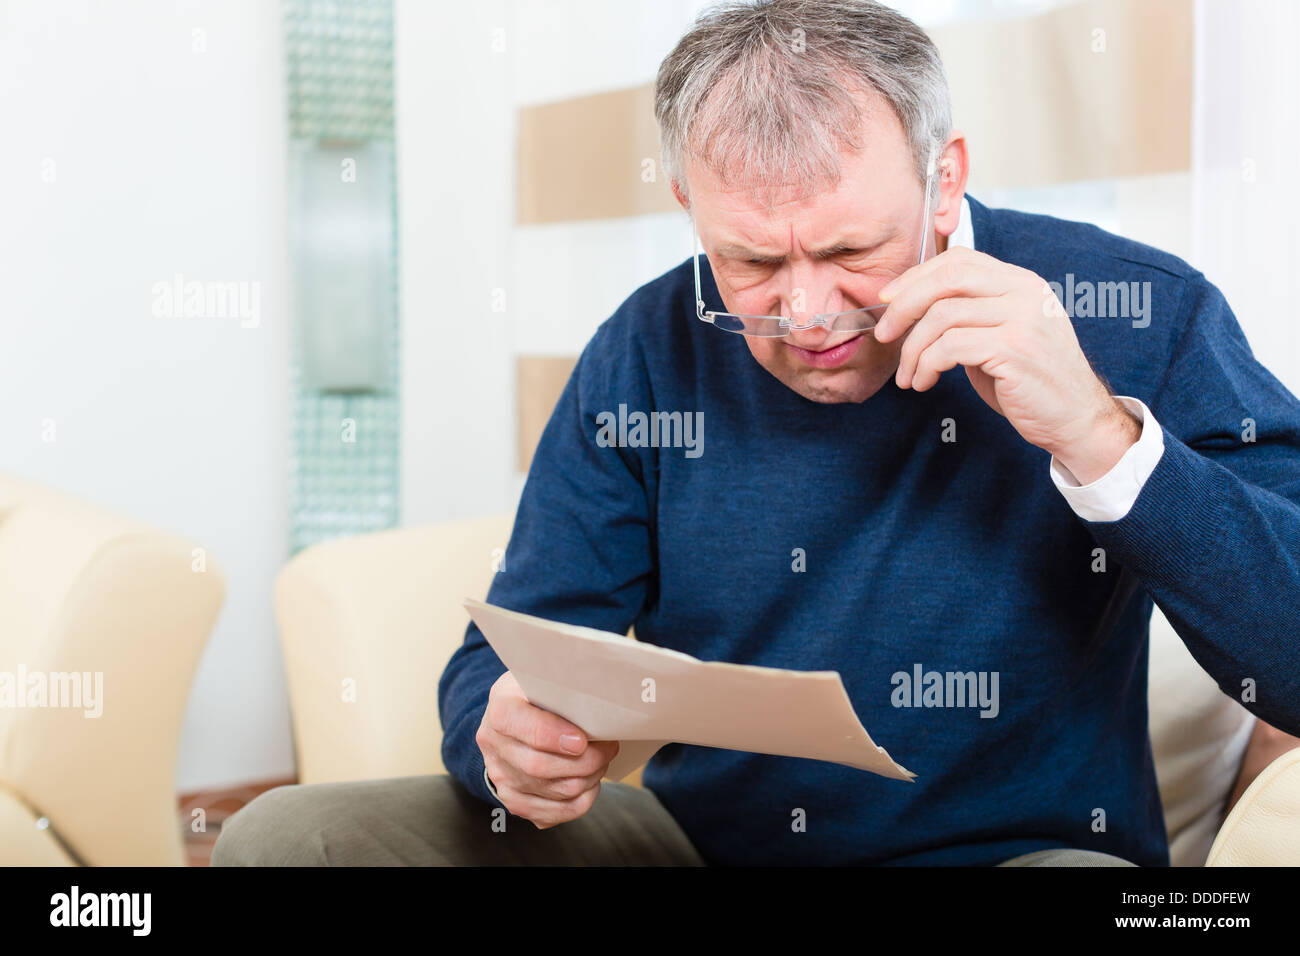 Hombre mayor o Senior han recibido una carta, quizás es un recordatorio o una factura Foto de stock